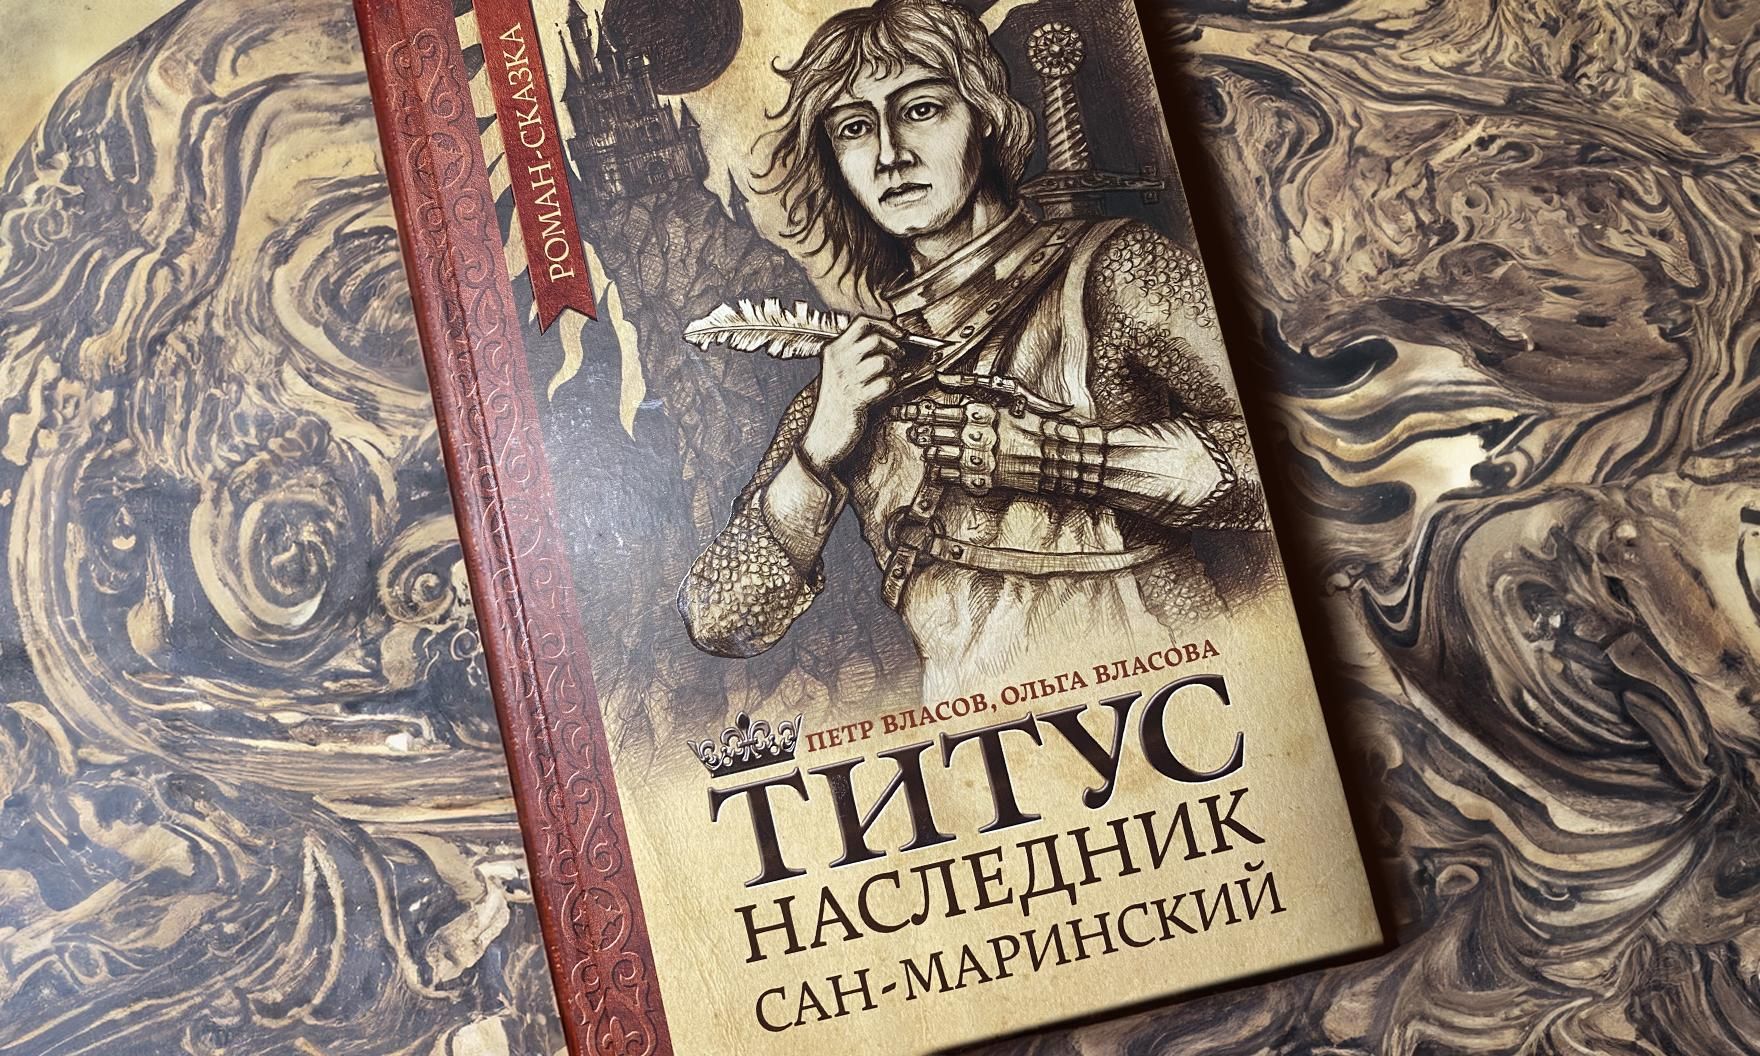 Петр и Ольга Власовы написали книгу про «Титуса, наследника Сан-Маринского»